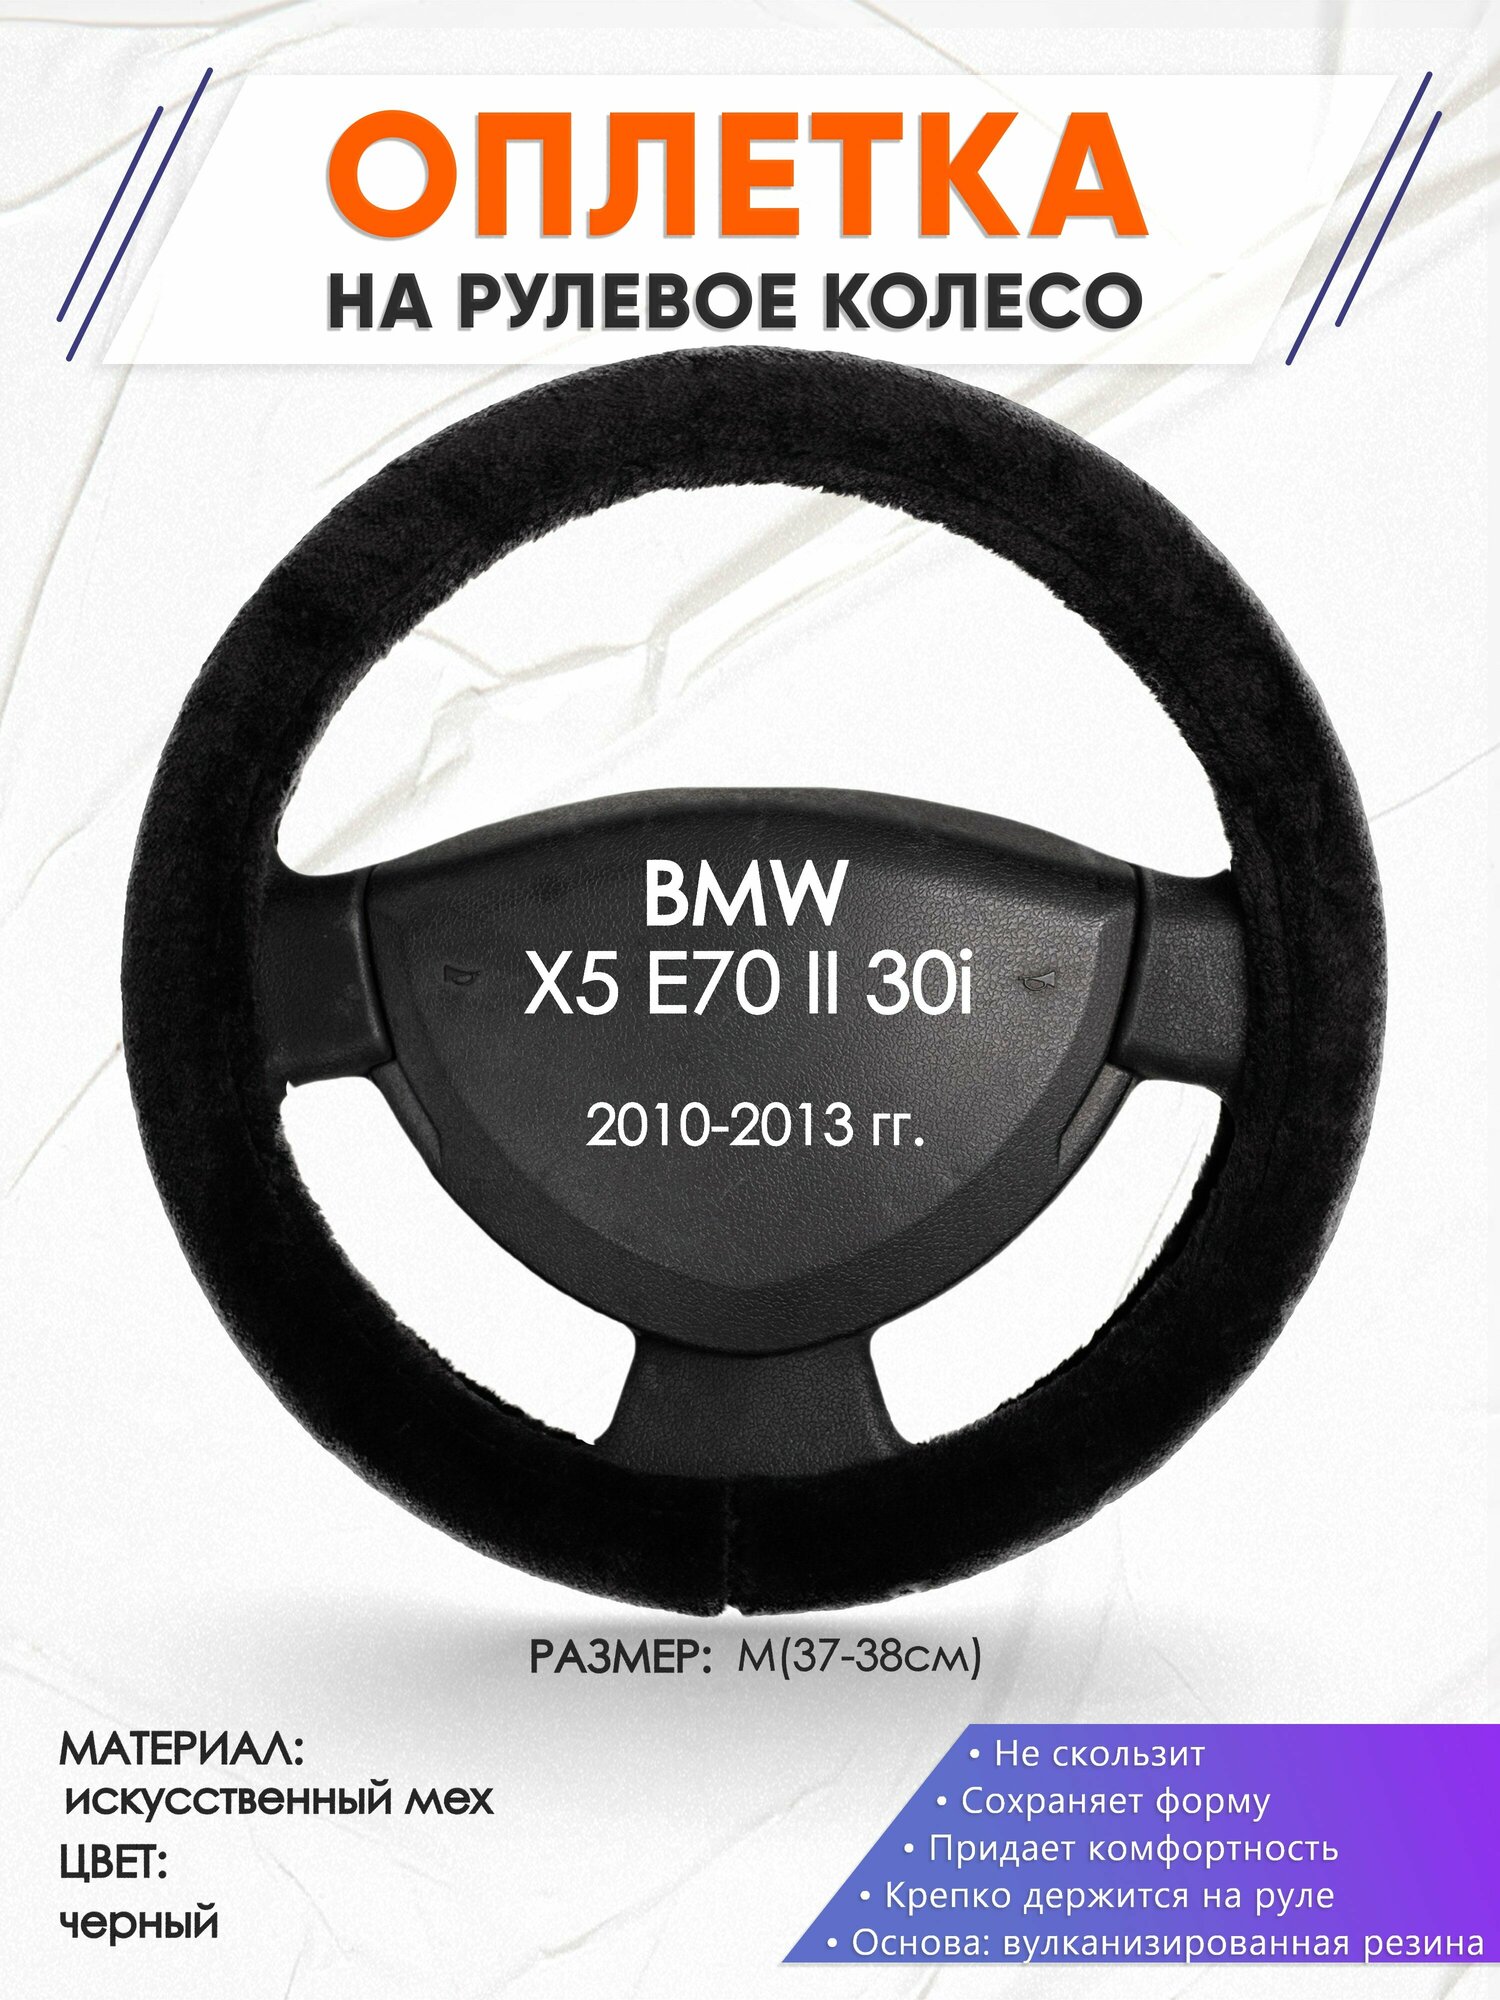 Оплетка наруль для BMW X5 E70 II 30i(Бмв икс 5 е70) 2010-2013 годов выпуска, размер M(37-38см), Искусственный мех 45